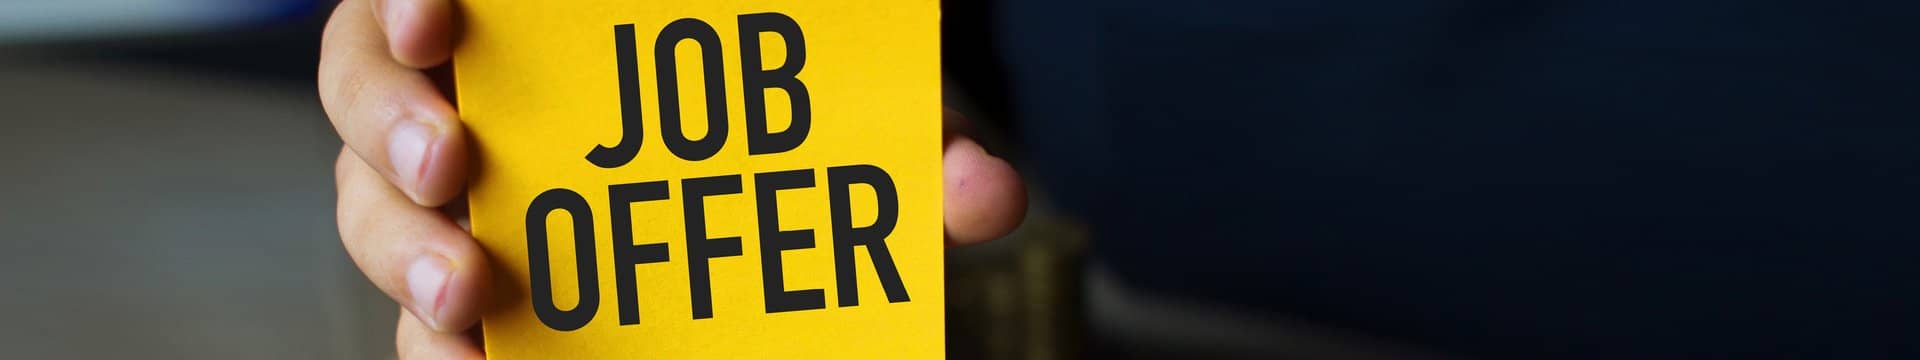 Eine Hand, die ein gelbes Schild zeigt mit der schwarzen Aufschrift "JOB OFFER".